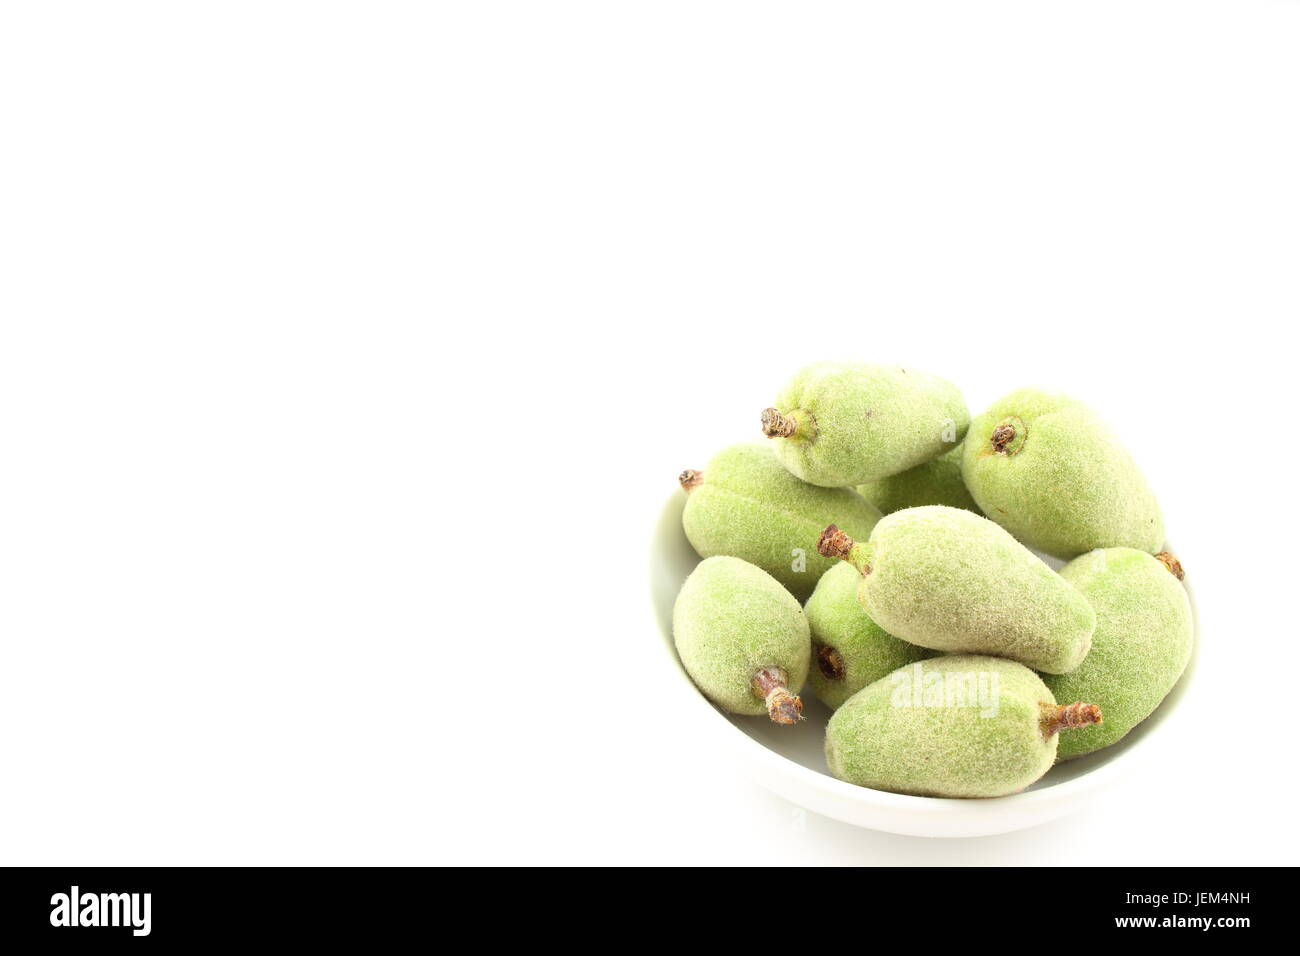 Composition de fruits amande verte fraîche dans un petit bol blanc Banque D'Images